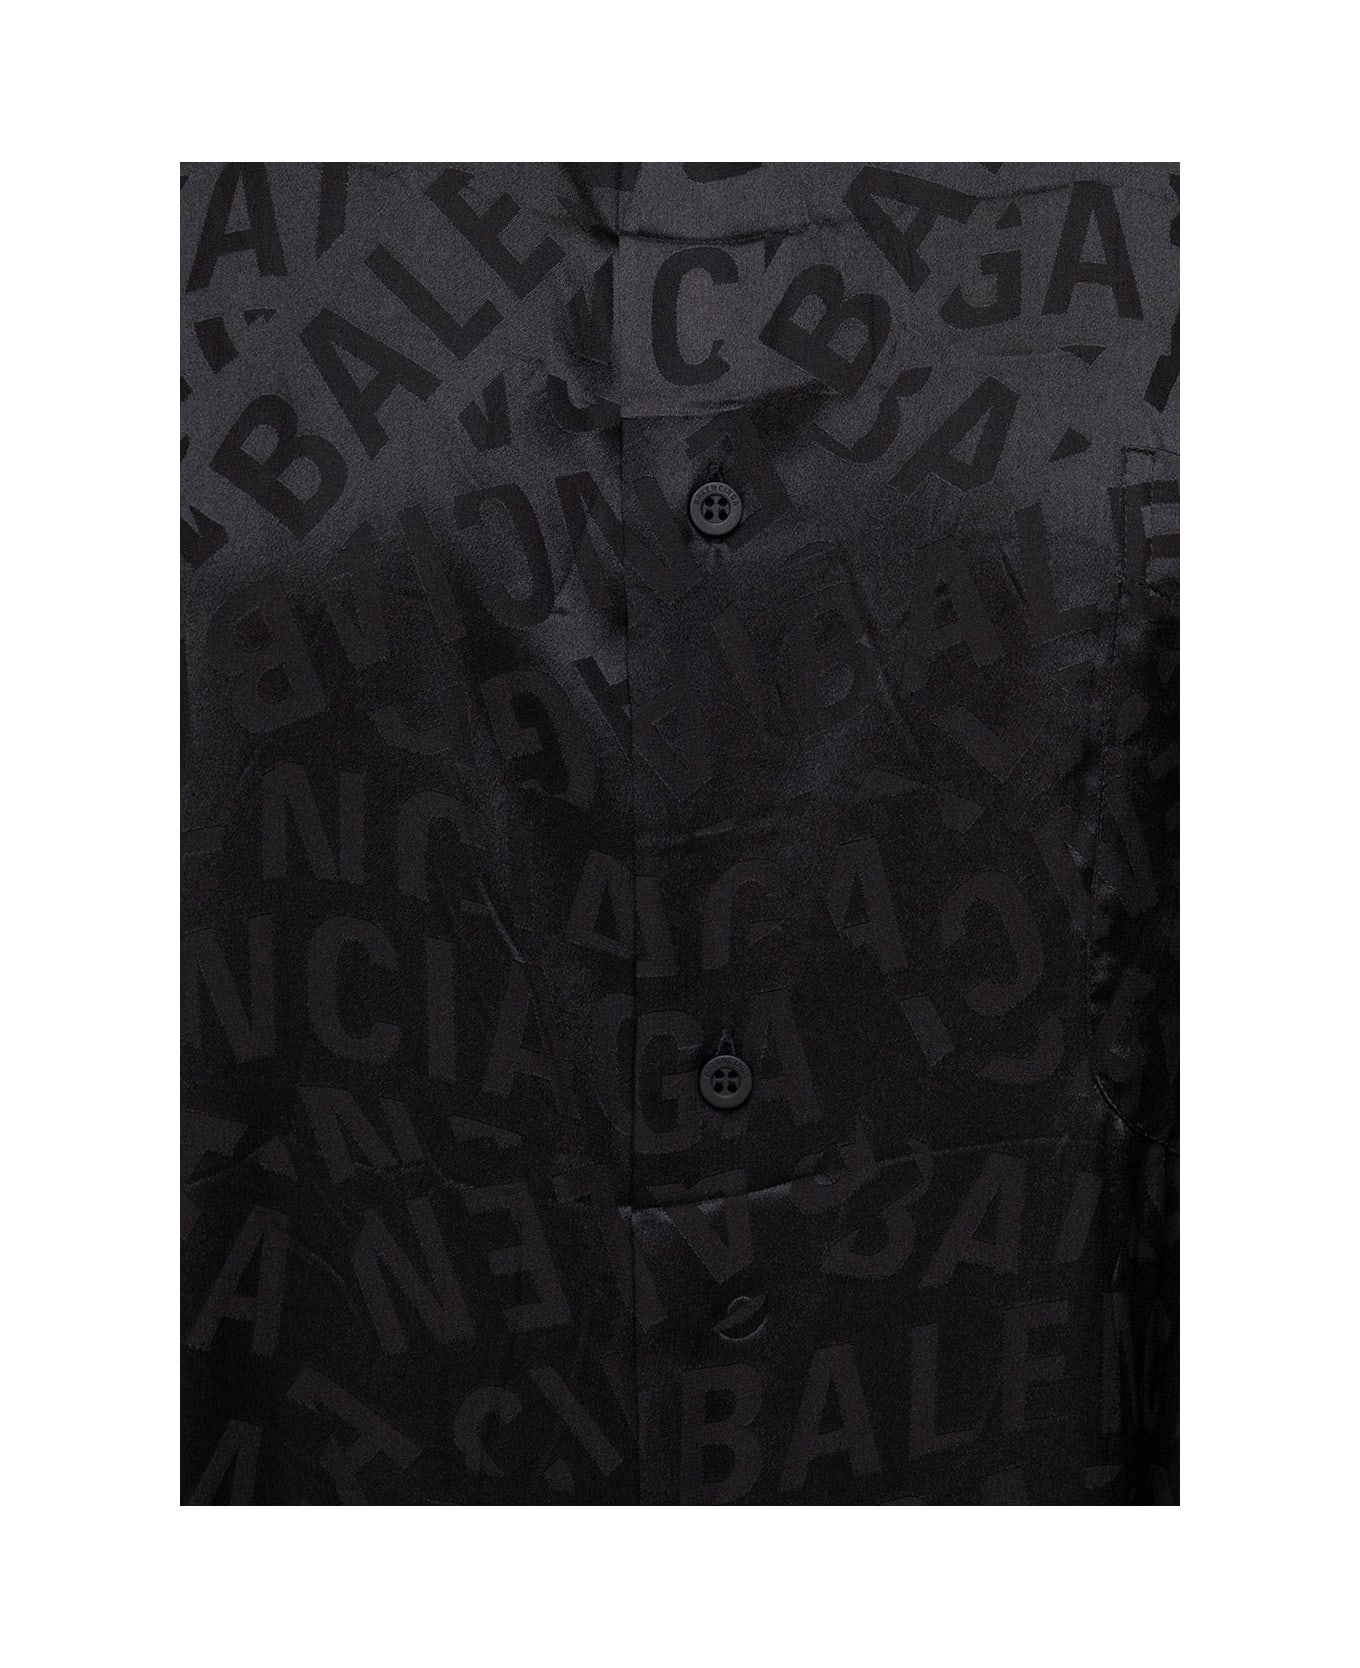 Balenciaga Black Popeline Shirt With Logo Balenciaga Woman - Black